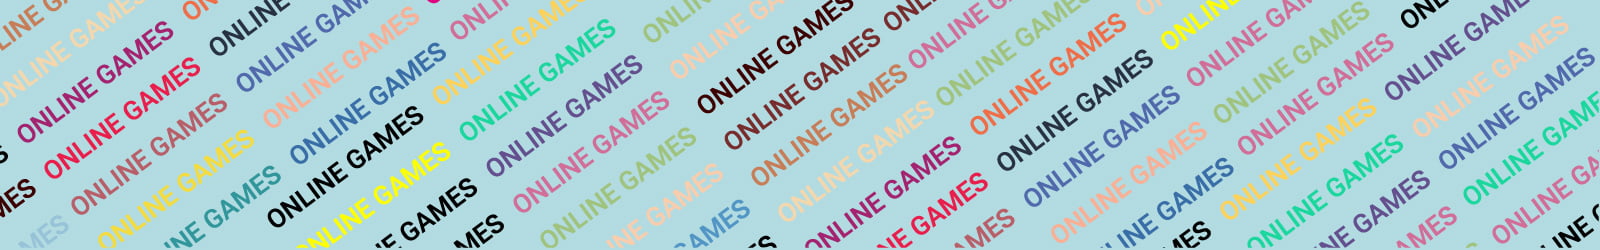 Online ESL Games Blue Banner